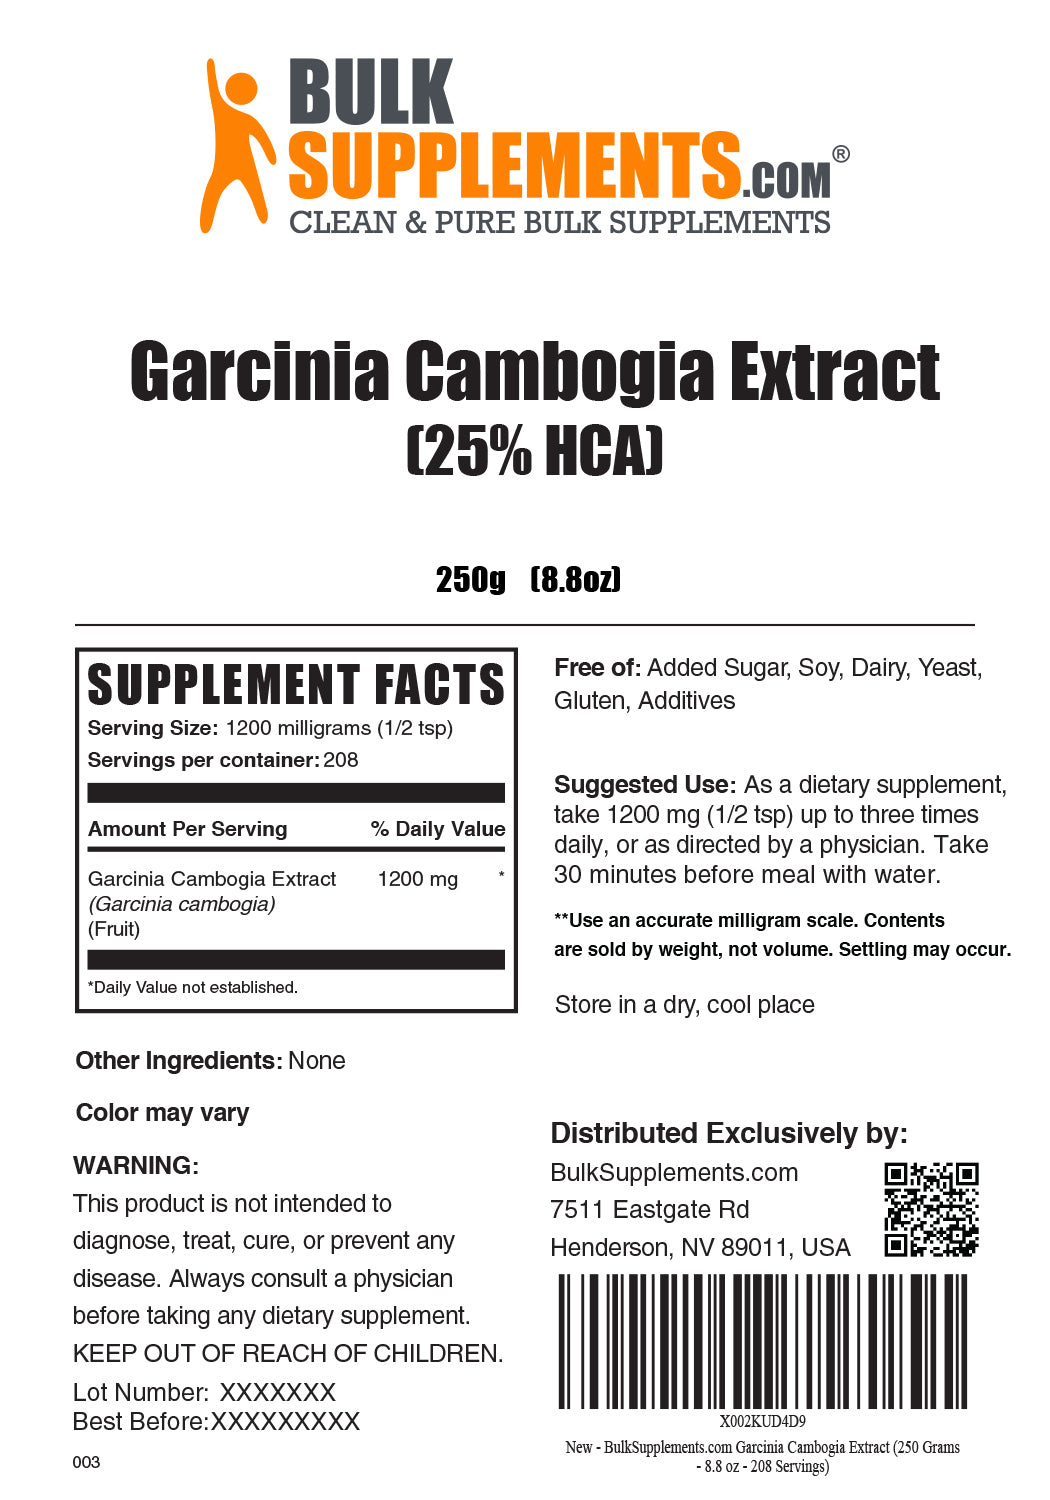 Pudră de extract de Garcinia Cambogia